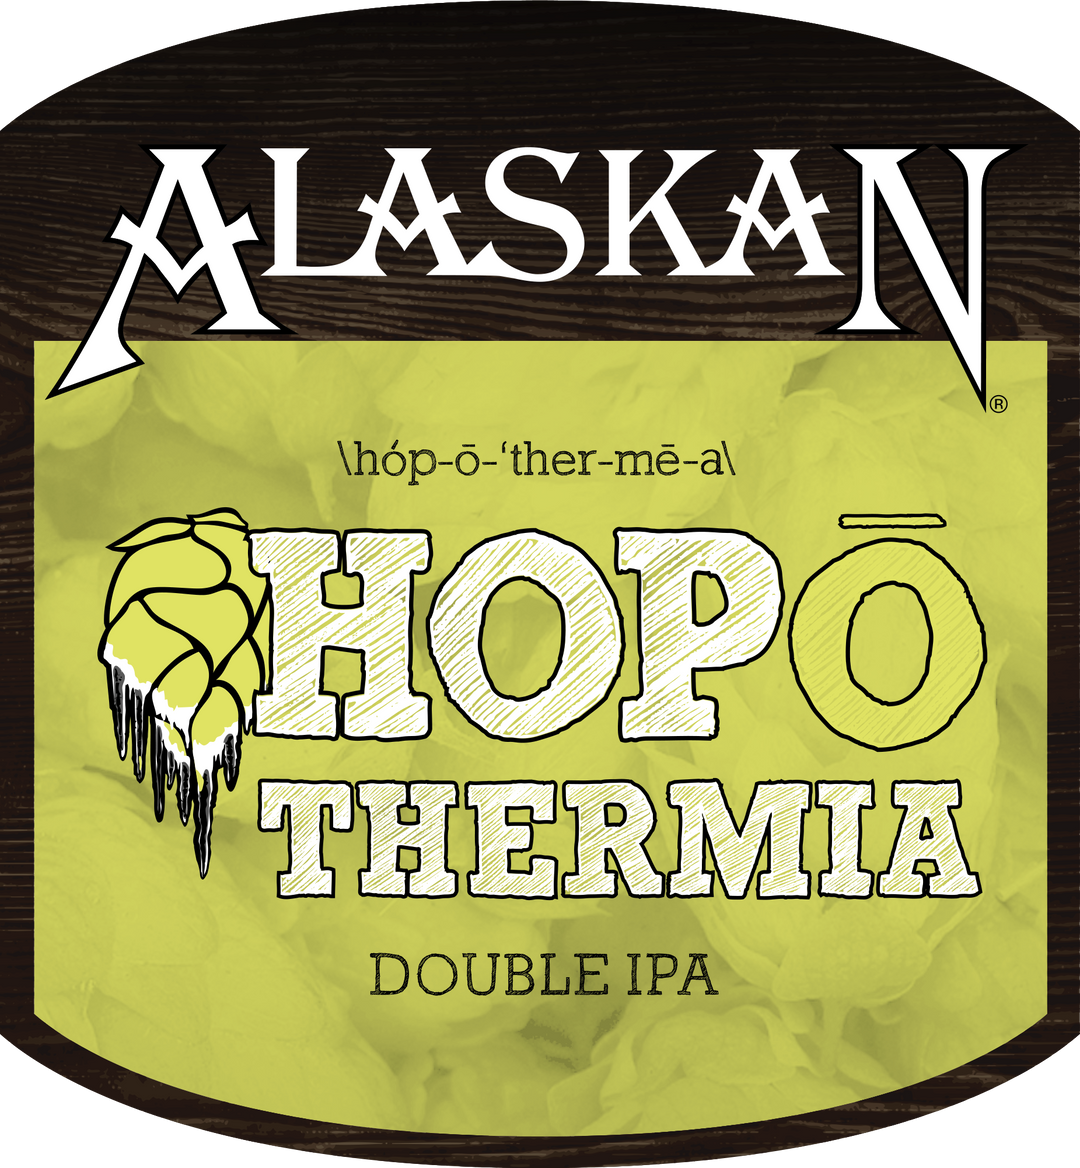 Alaskan Hopothermia Double IPA 6 pack bottles